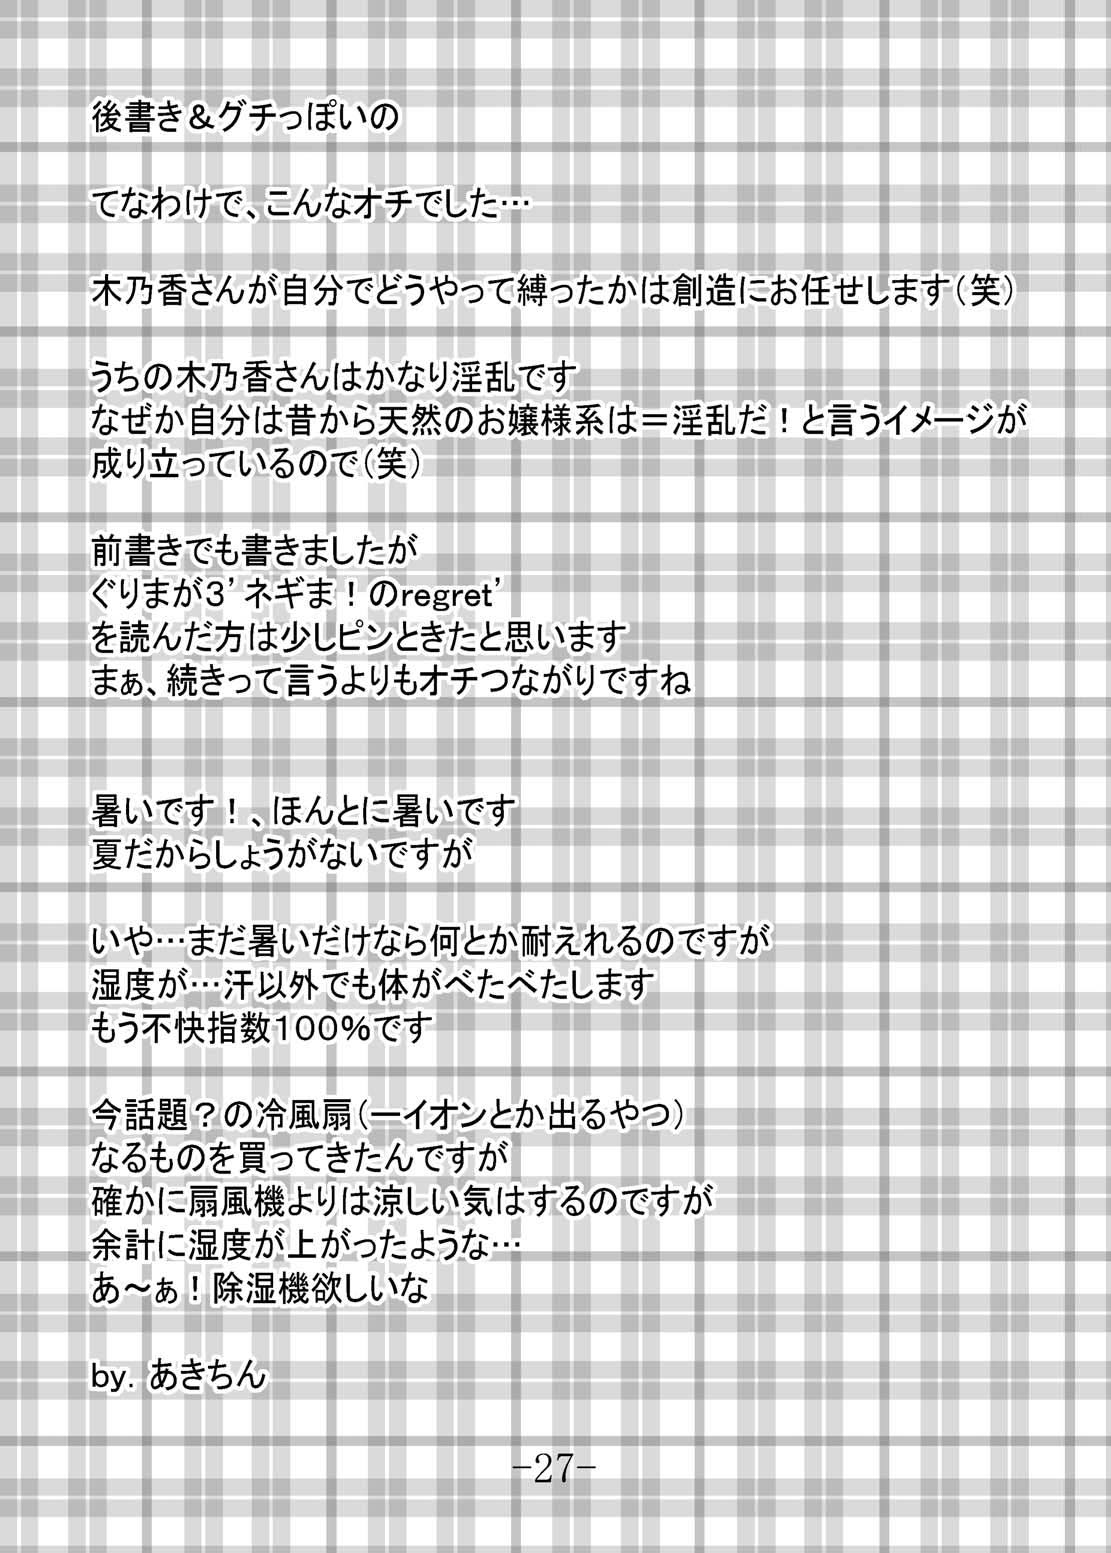 (C66) [馬栗産業 （あきちん）] GURIMAGA Vol.6 てんむす (魔法先生ネギま！)